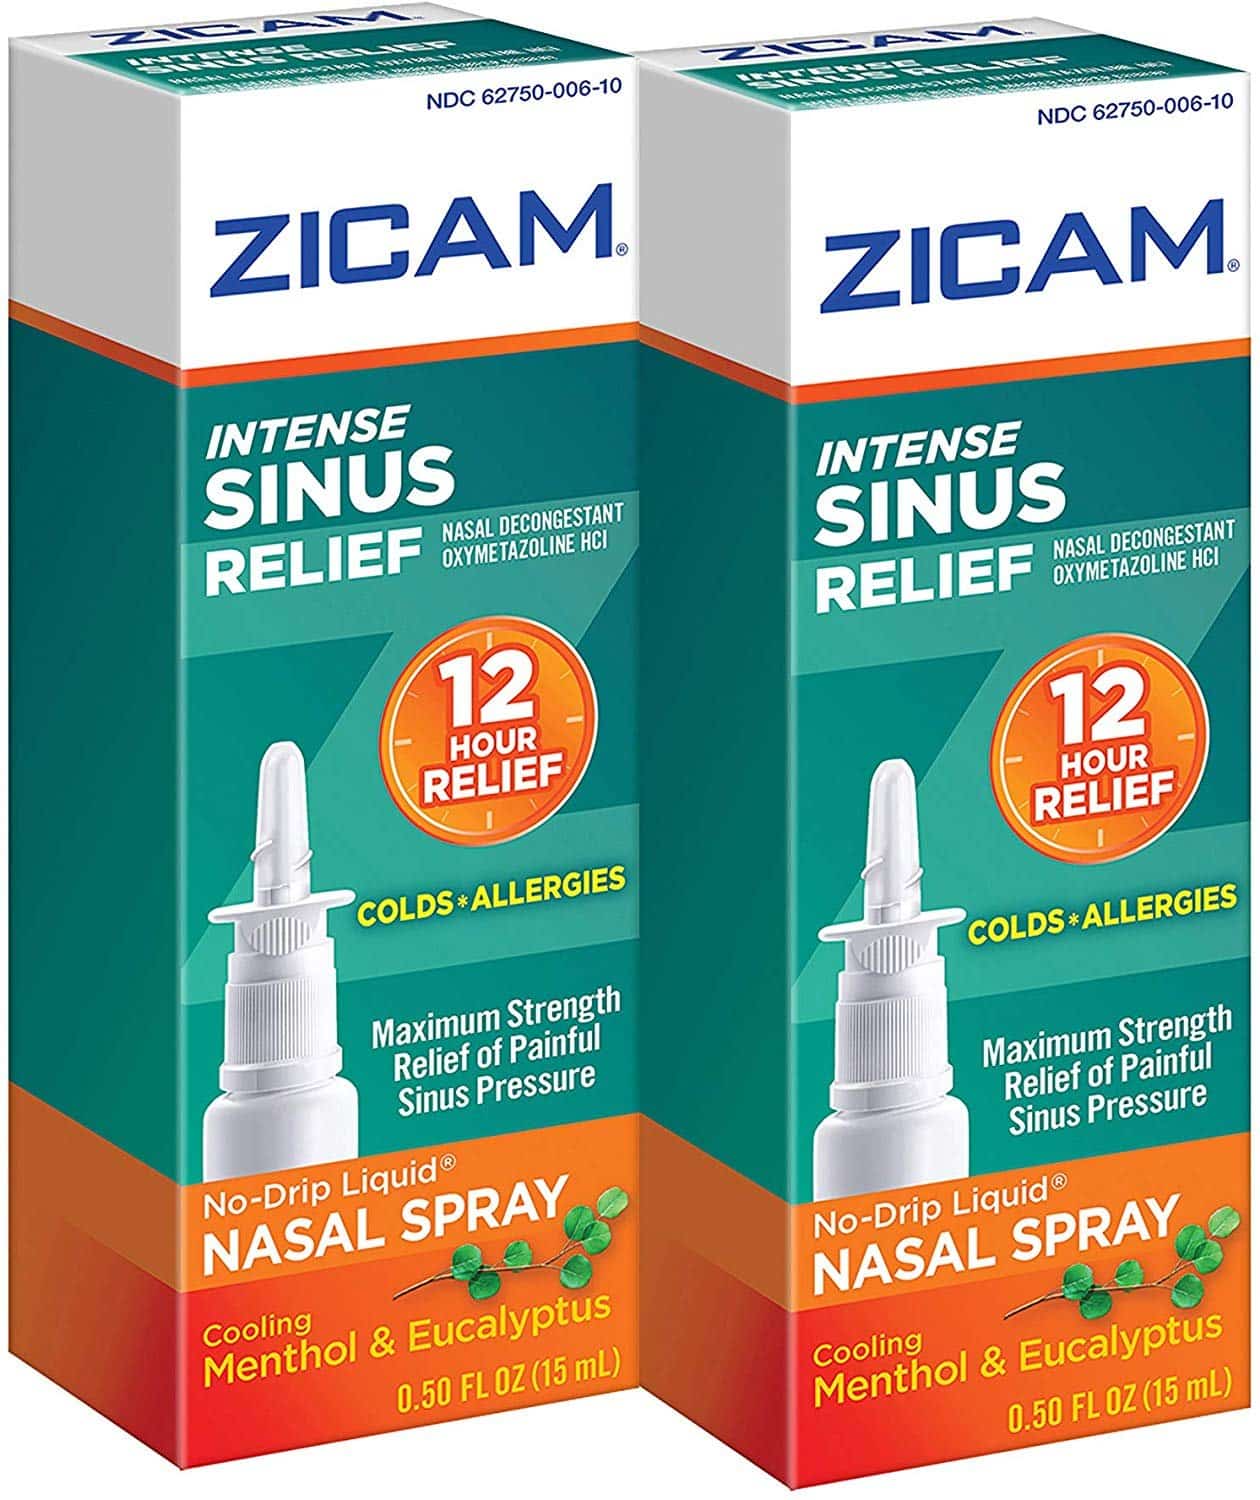 Zicam Intense Sinus Relief No